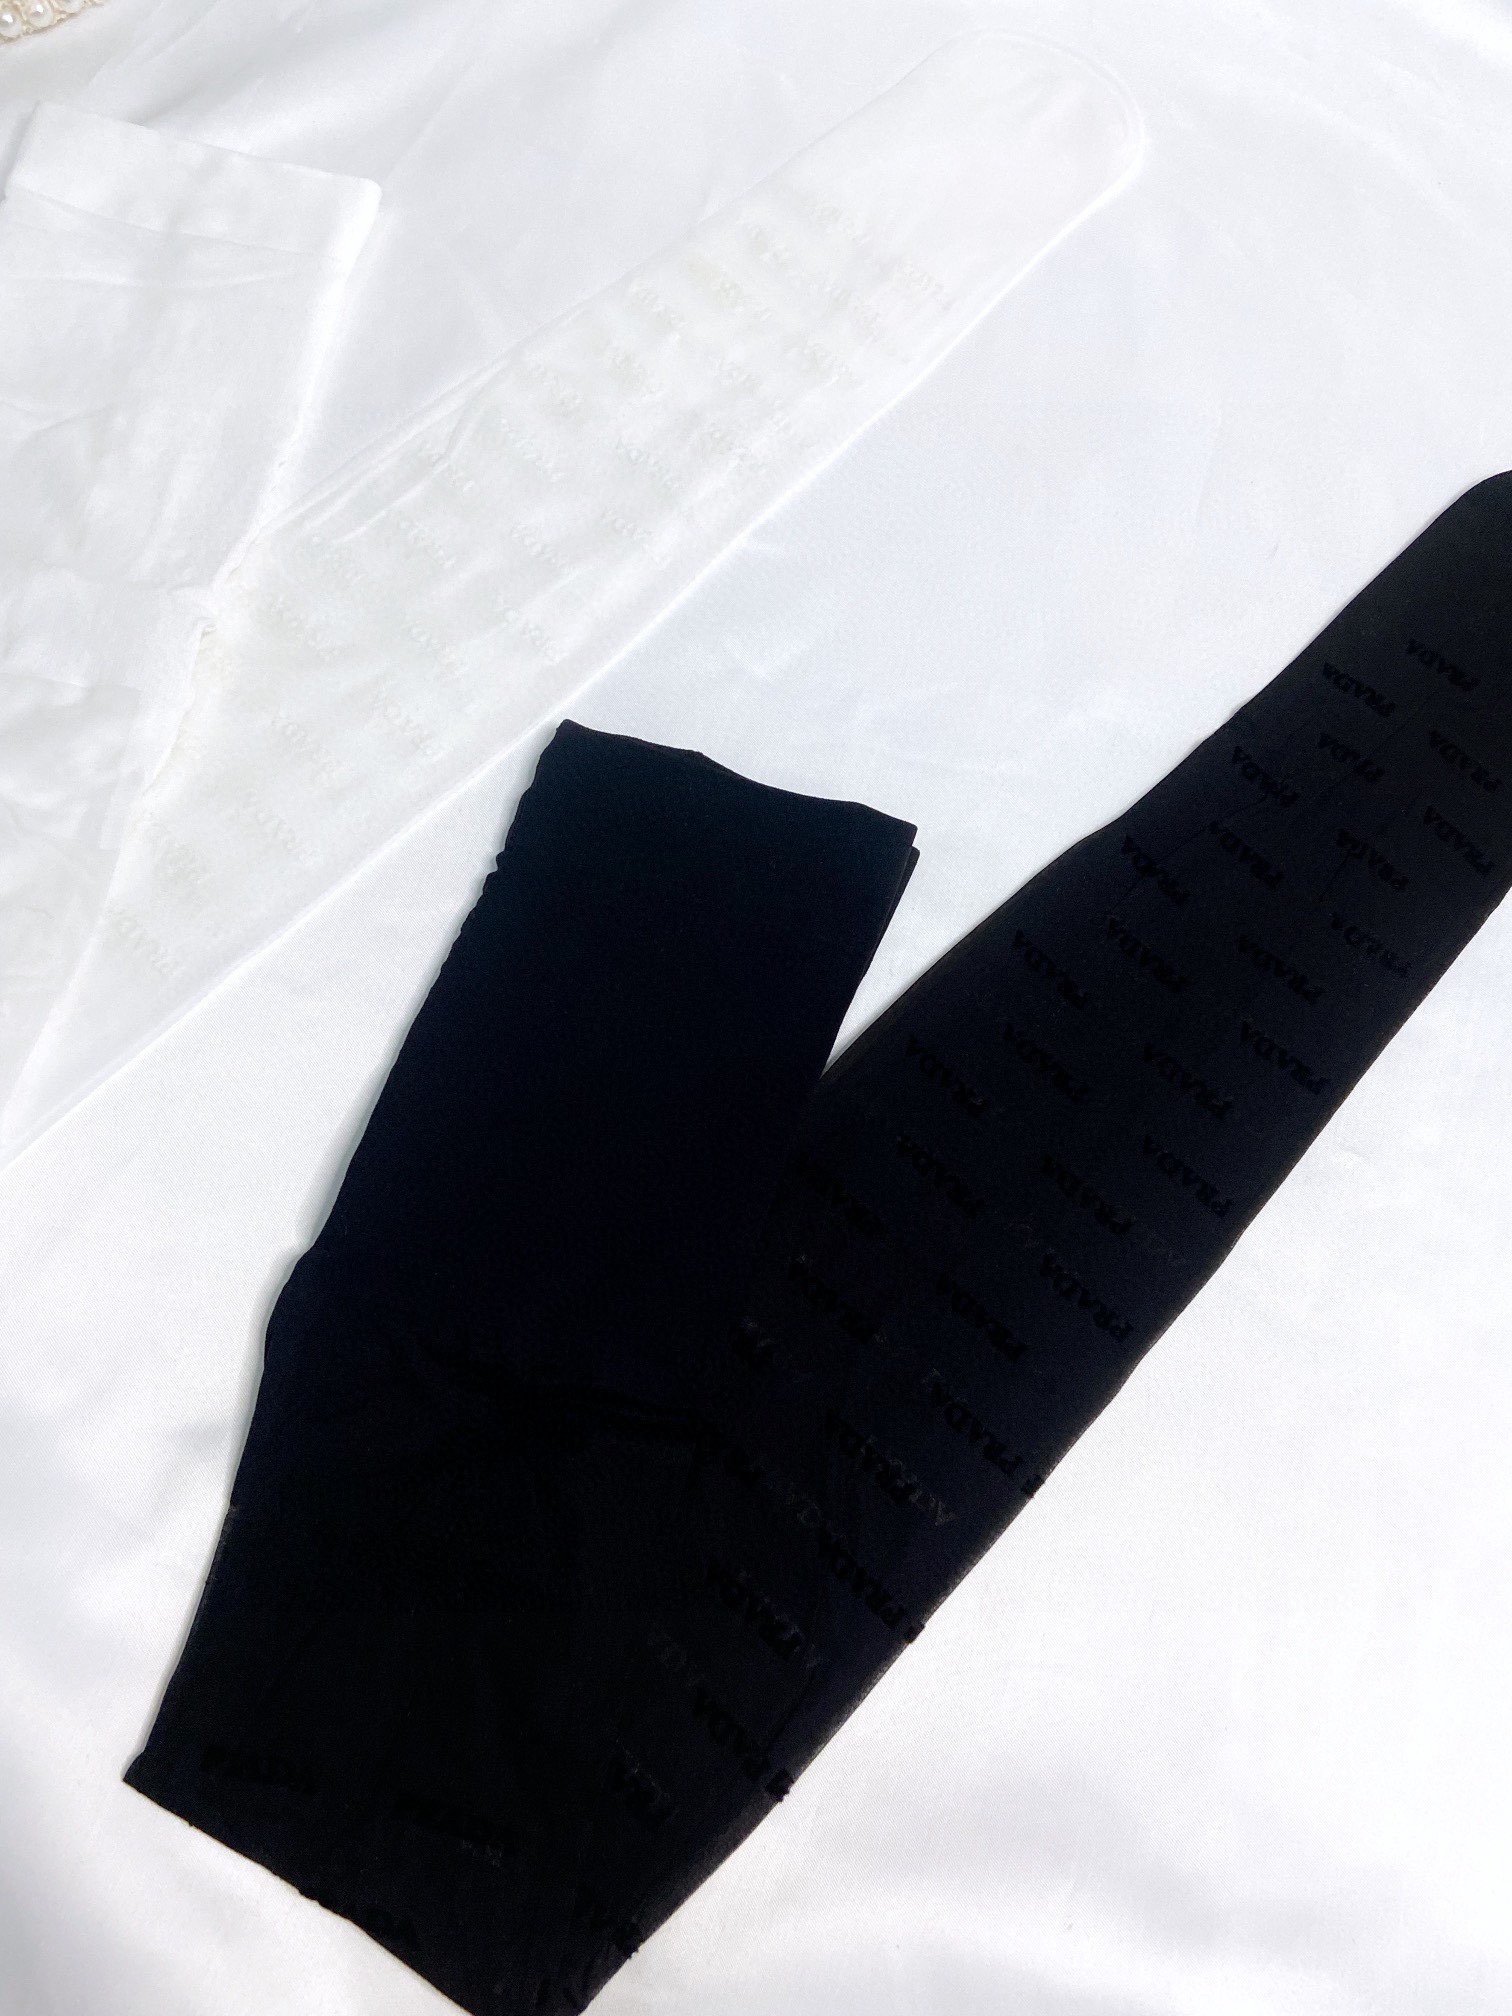 配包装一盒一双Prada普拉达经典植绒字母丝袜好看到爆炸欧美大牌丝袜一比一高版本制作可以看得到的工艺！潮